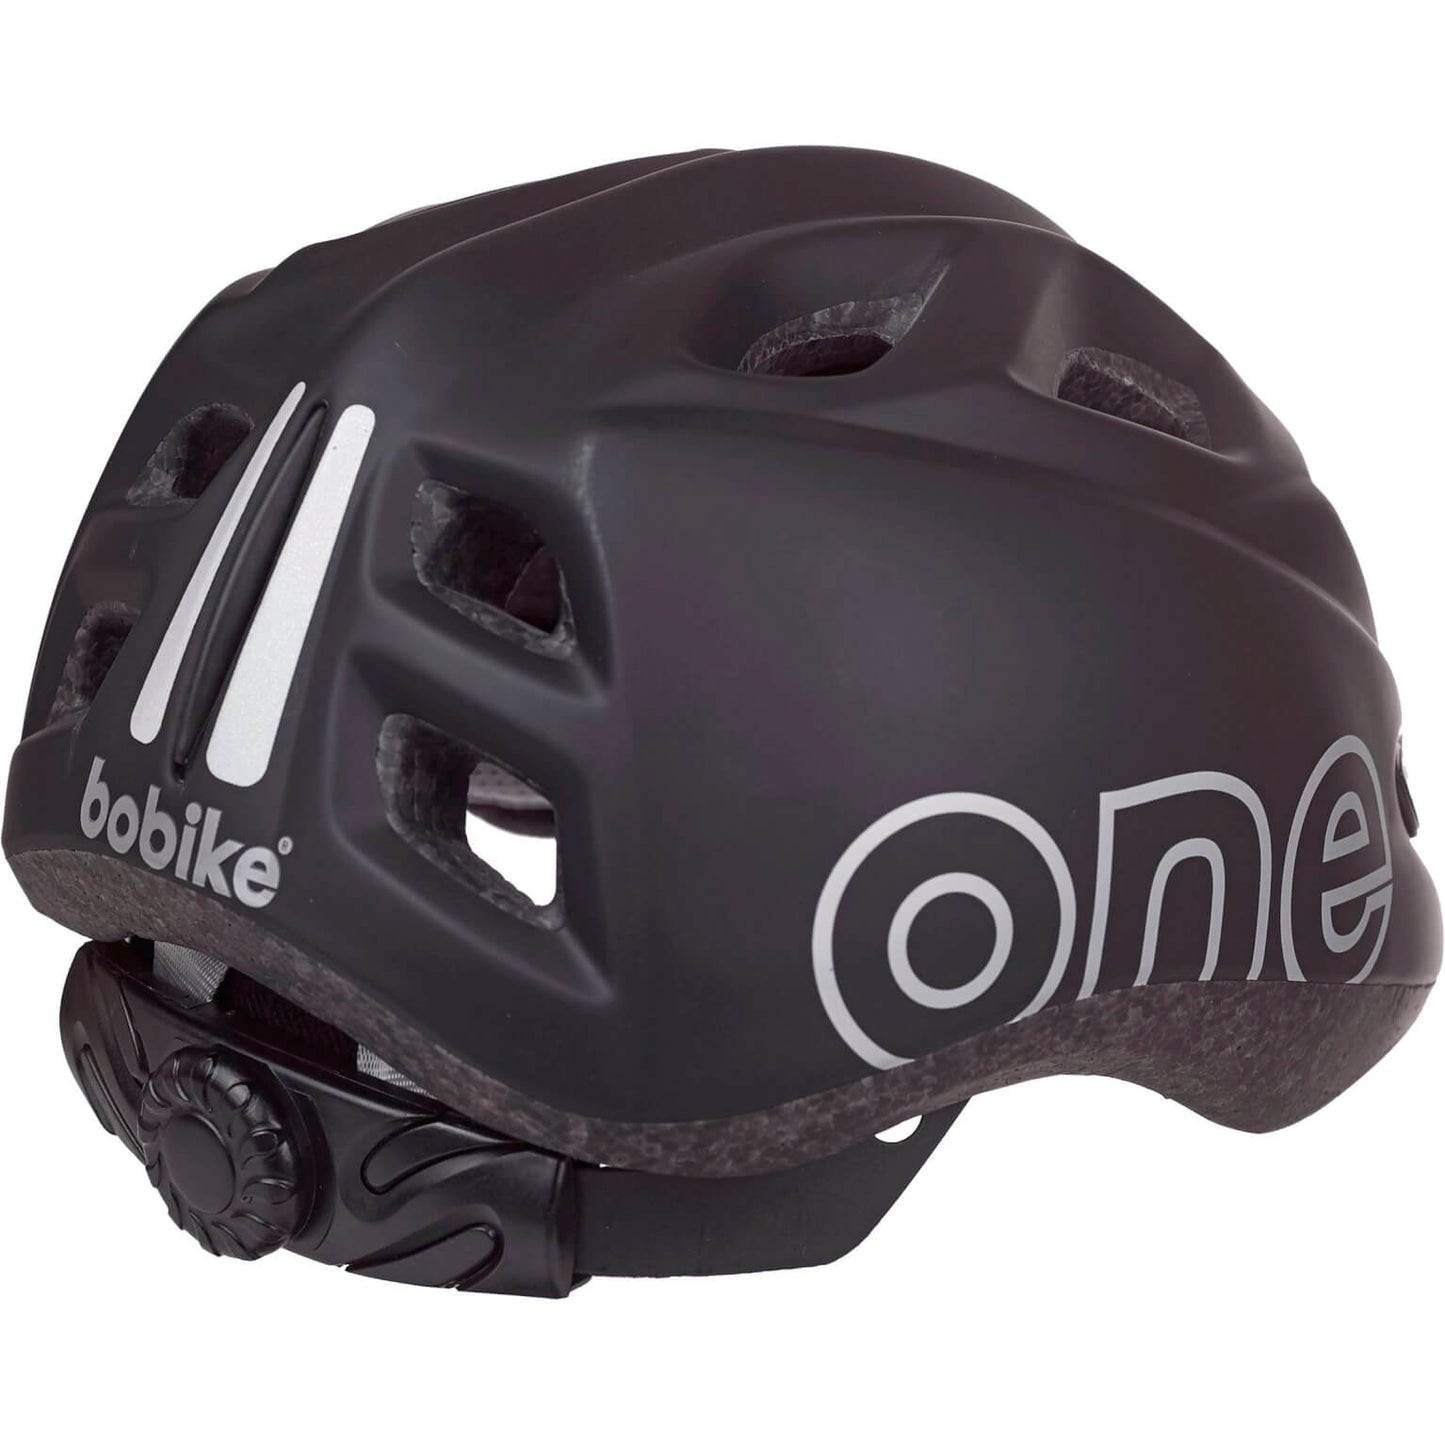 One Plus Helmet 48-52 cm Black Size XS